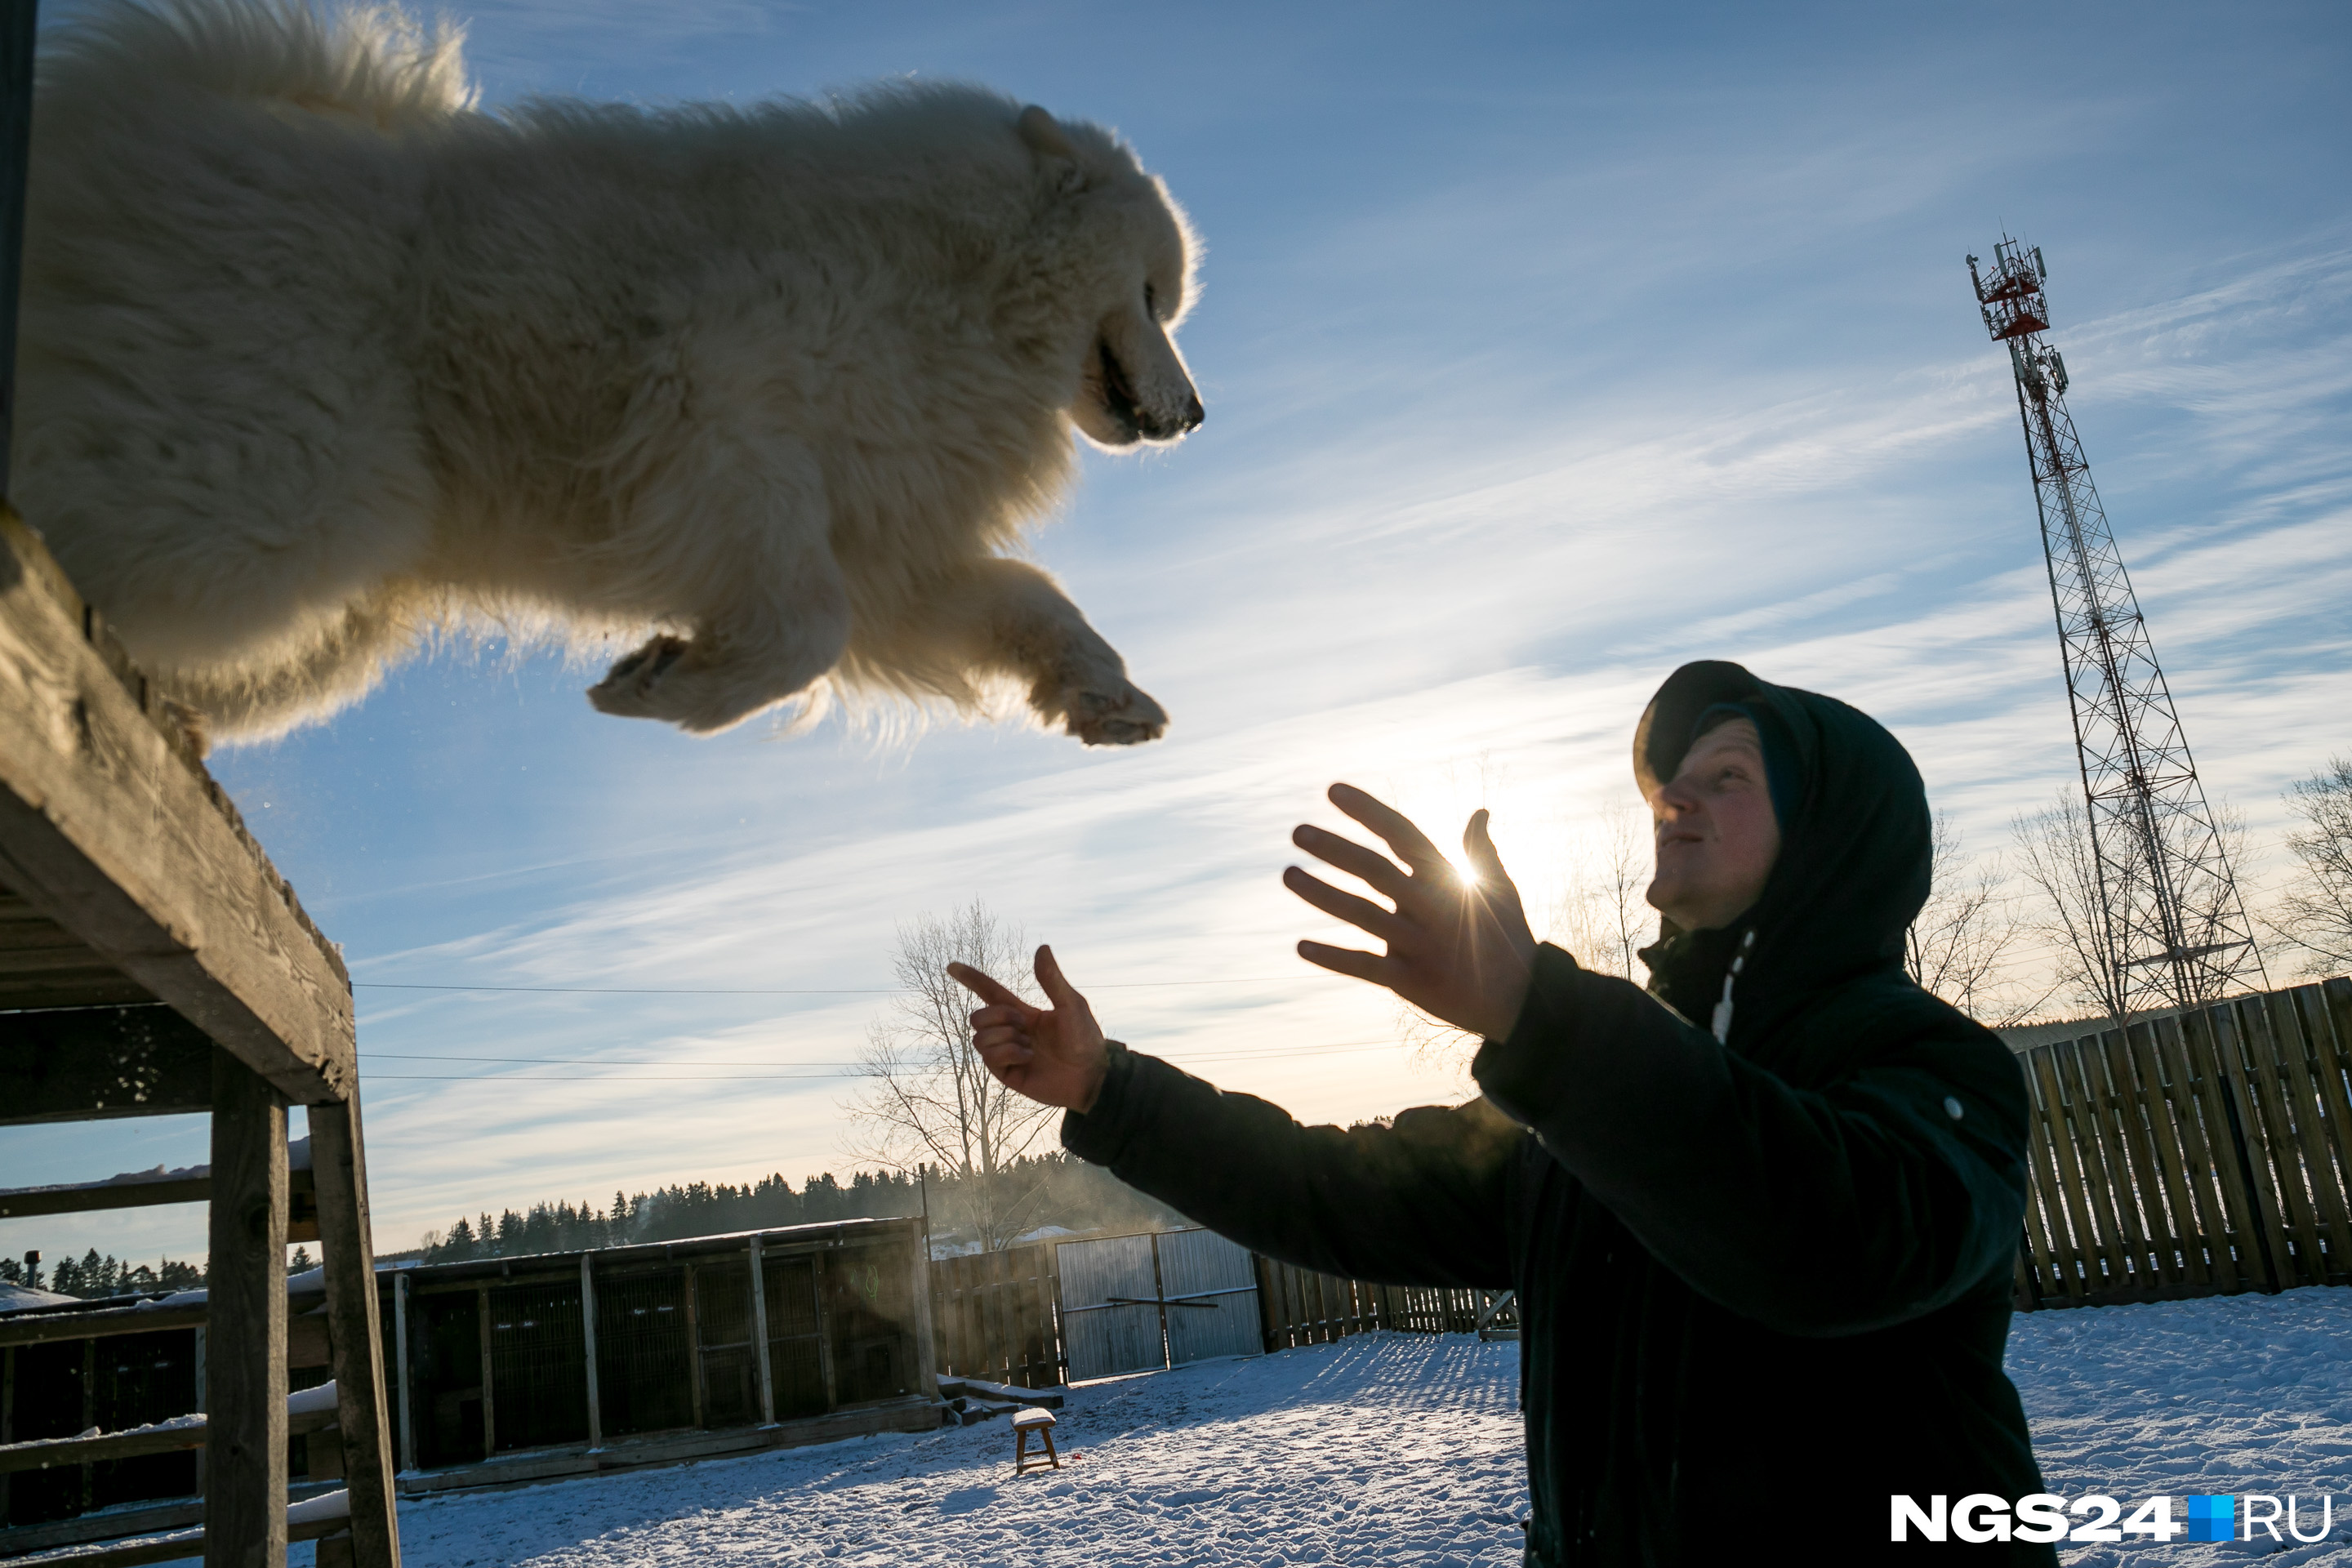 Собаки отвечают Ивану безграничным доверием — его любимец, пес Филипп, прыгает с высоты в руки